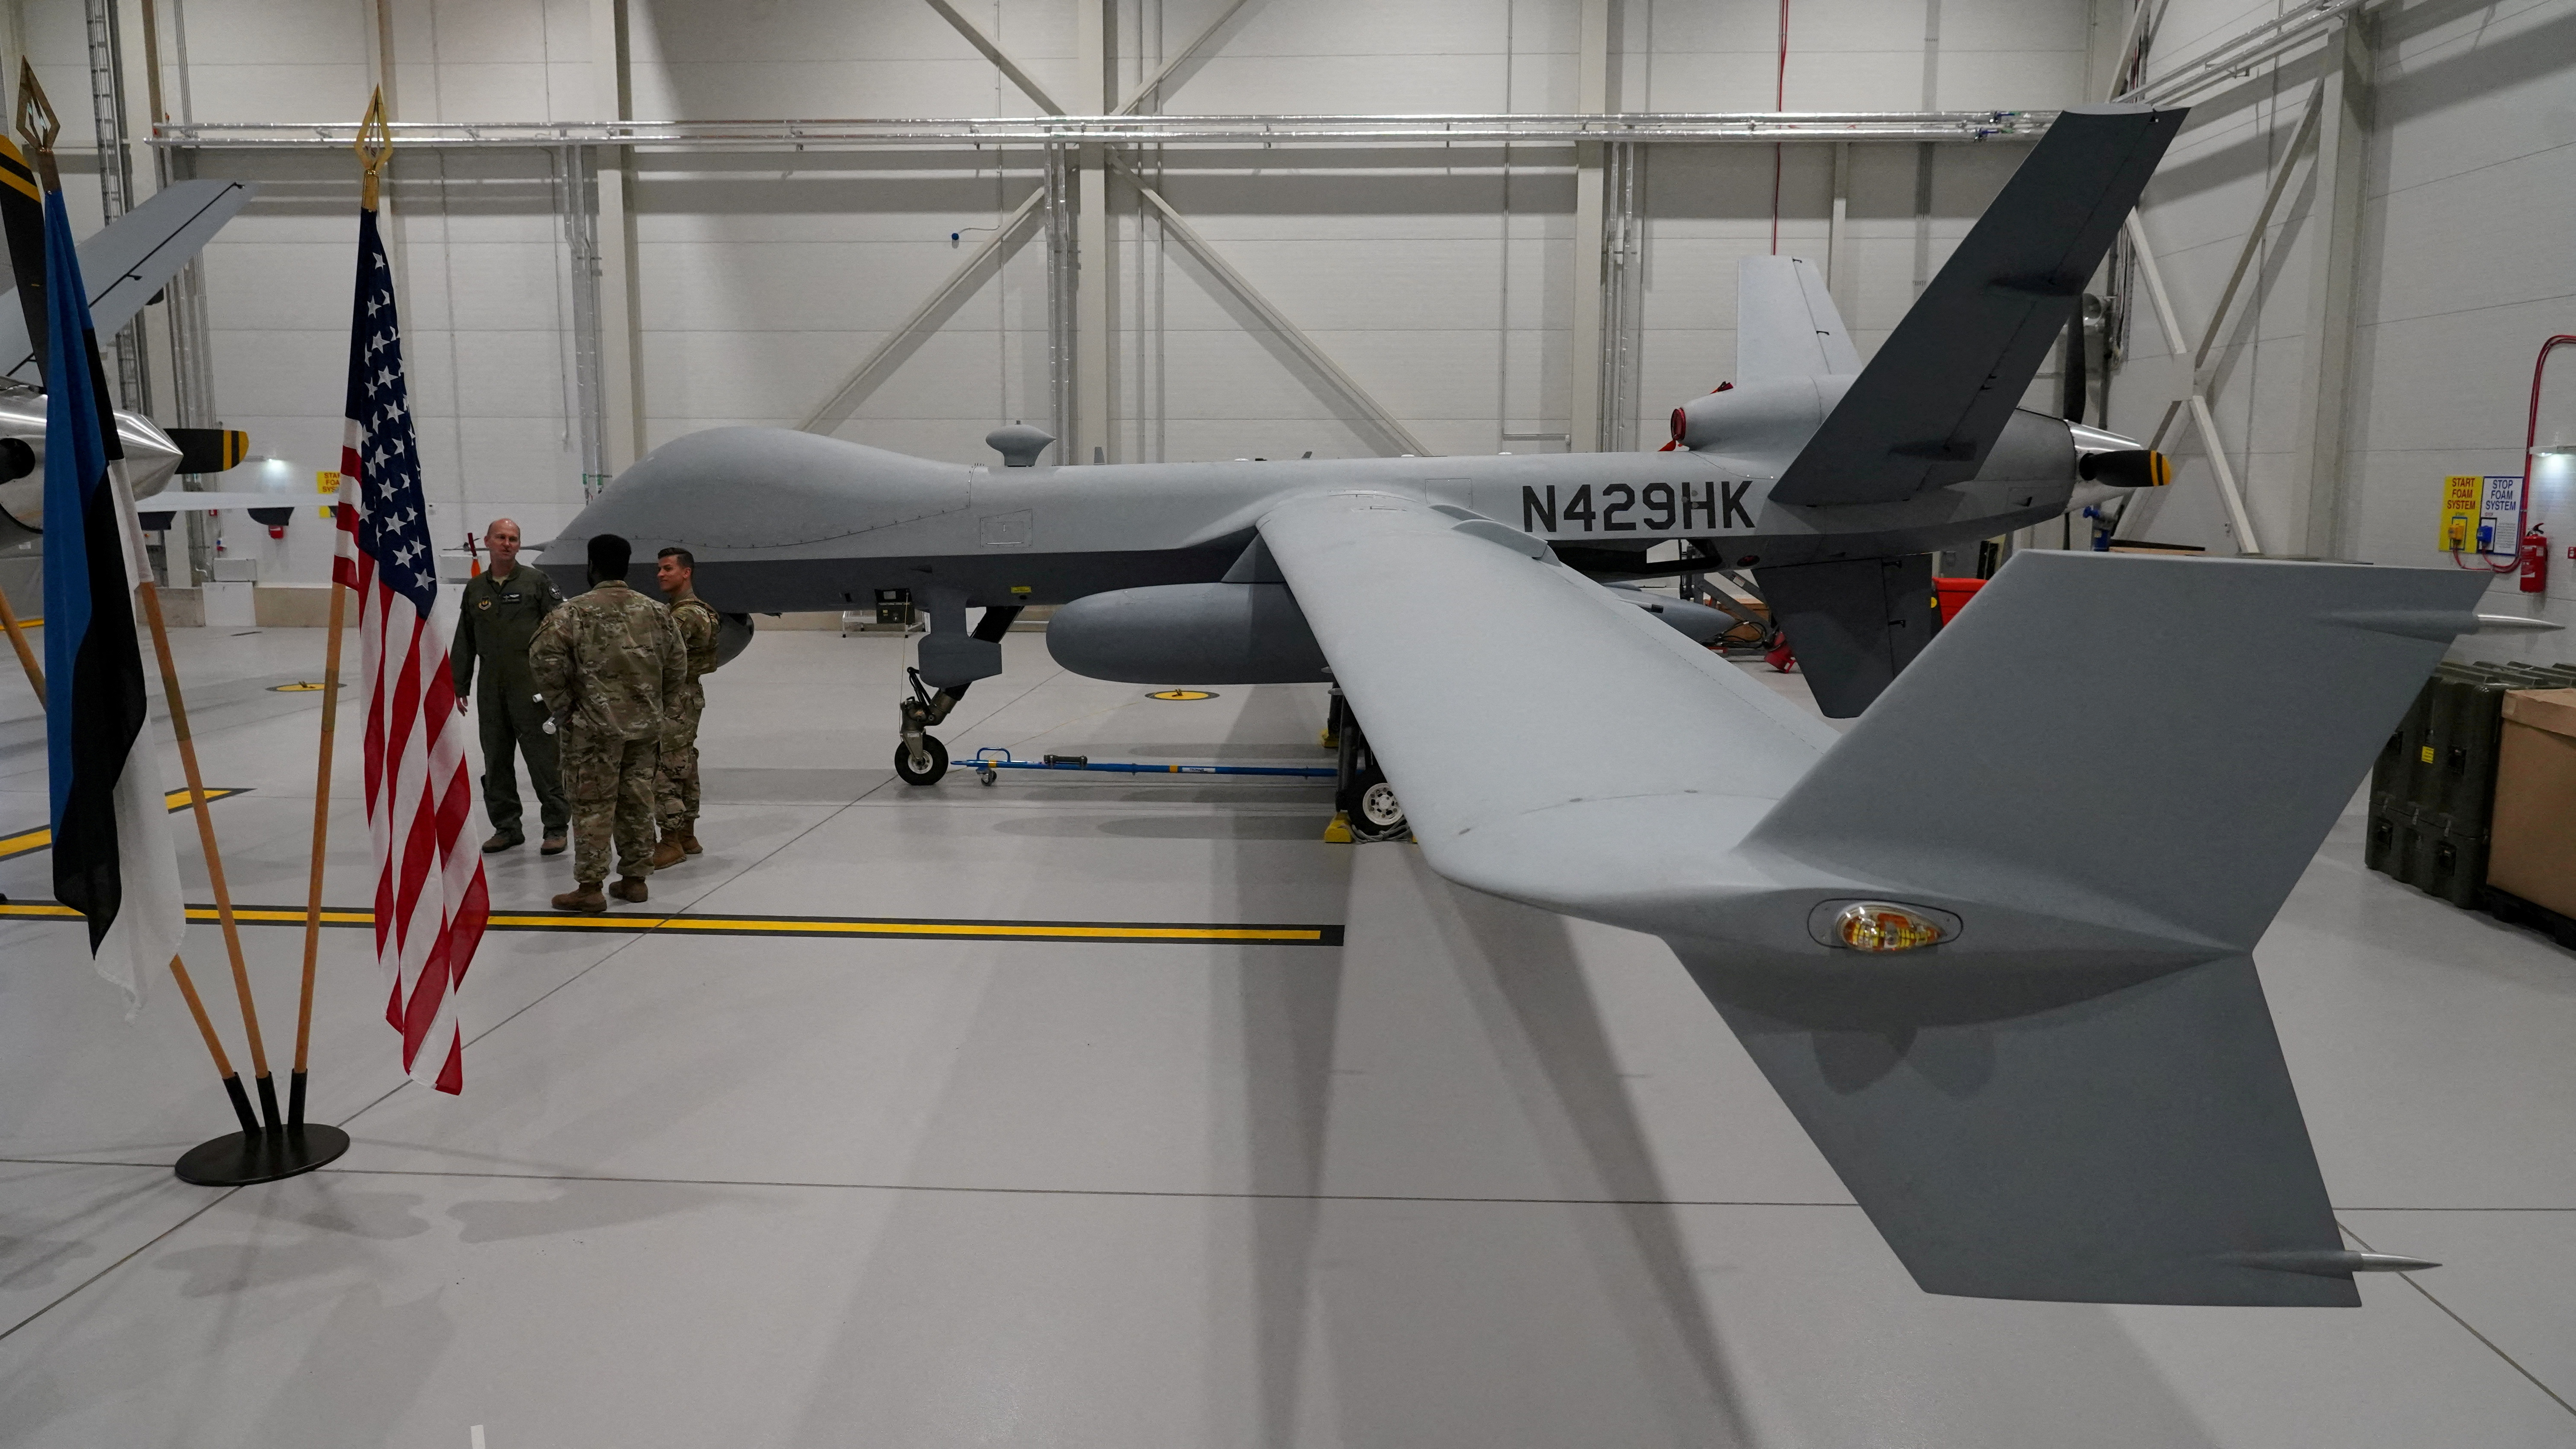 A U.S. Air Force MQ-9 Reaper drone sits in a hanger at Amari Air Base